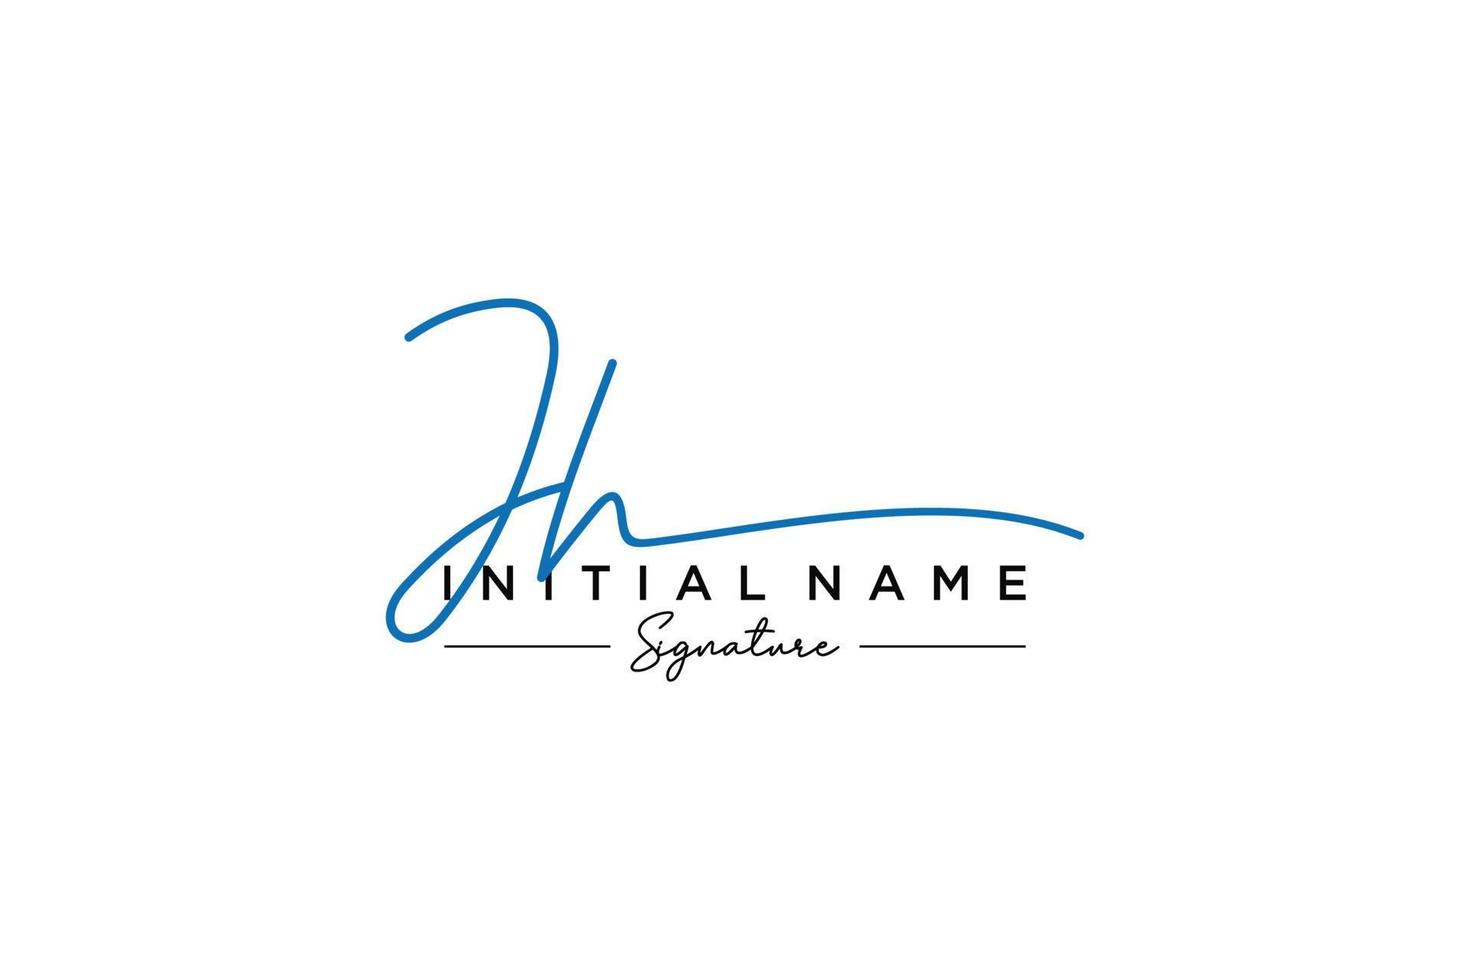 vector de plantilla de logotipo de firma jh inicial. ilustración de vector de letras de caligrafía dibujada a mano.